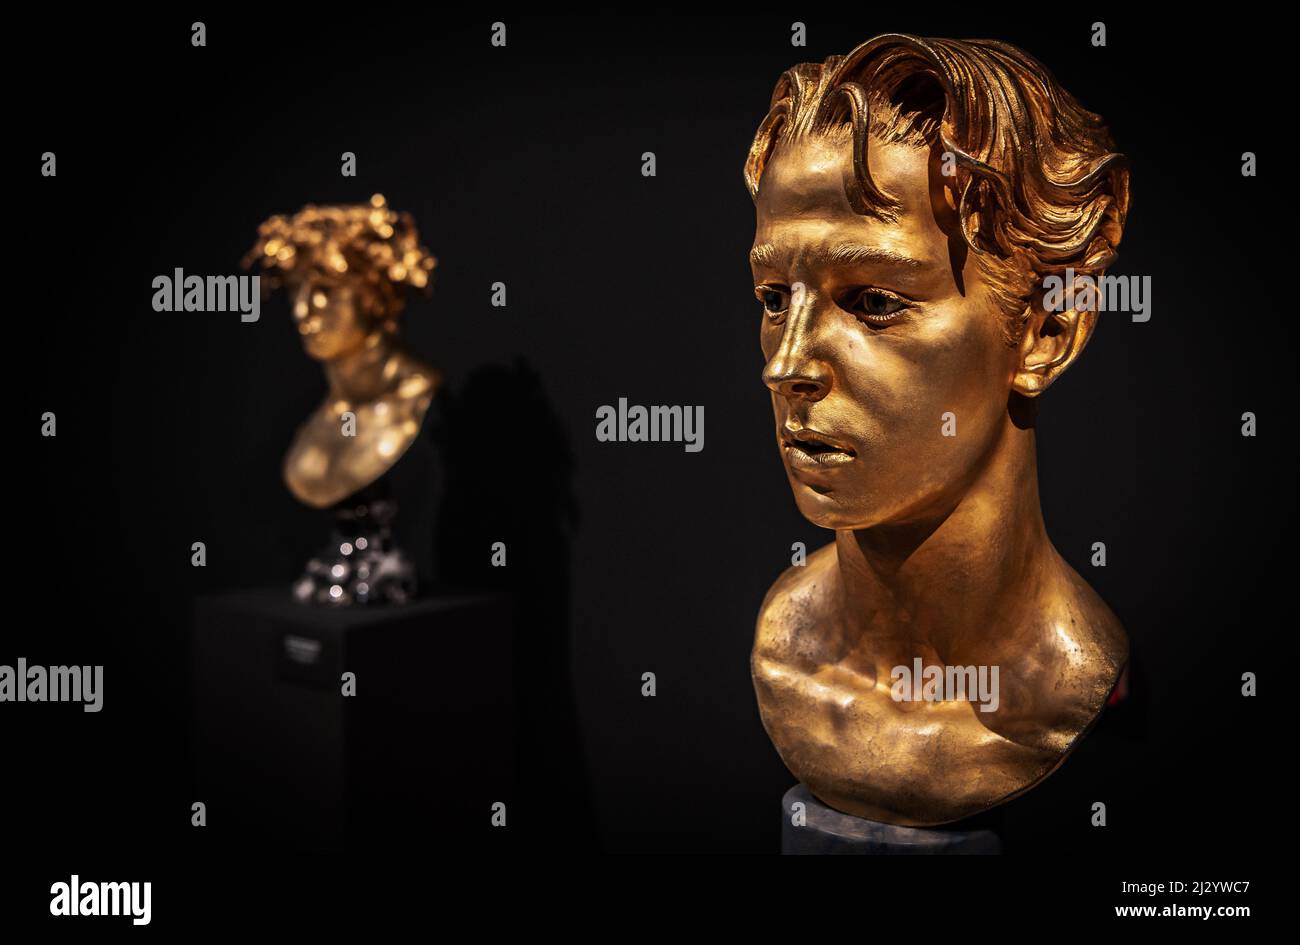 Età d'oro 4 - scultura in bronzo dell'artista Livio Scarpella esposta al Museo d'Arte moderna e Contemporanea - Mart - - Rovereto - Italia Foto Stock